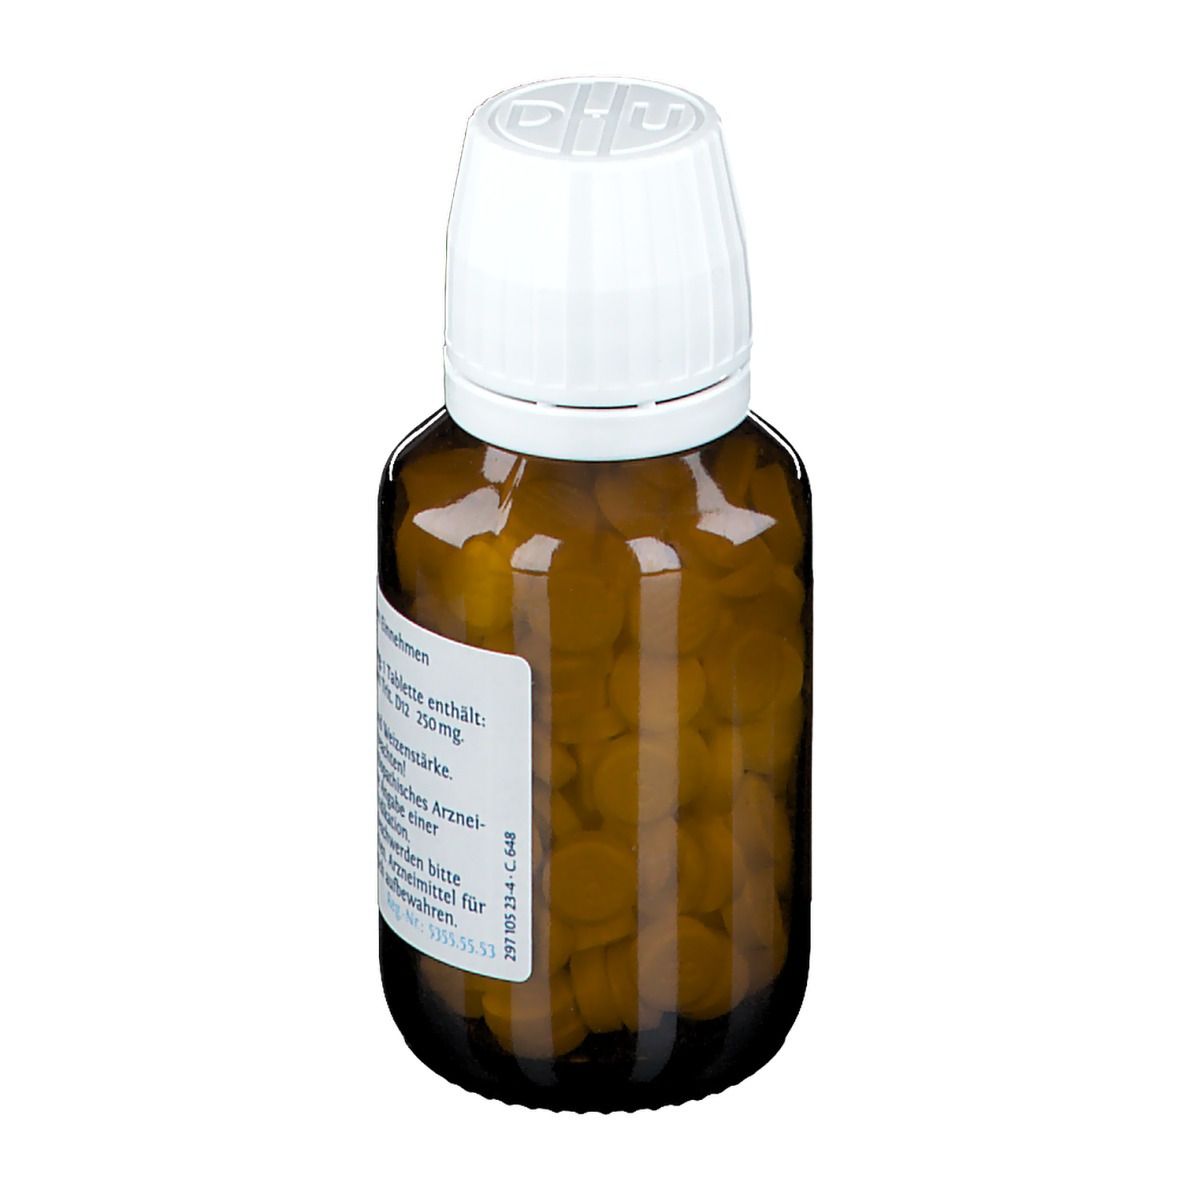 DHU Schüßler-Salz Nr. 8® Natrium chloratum D12